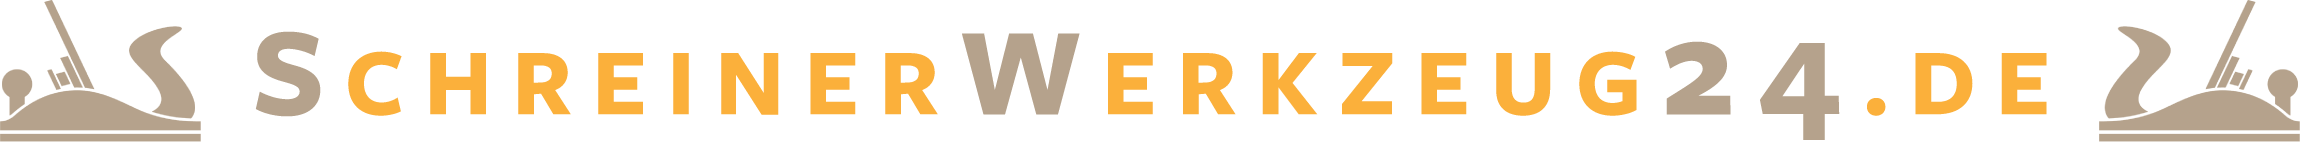 schreinerwerkzeug-logo